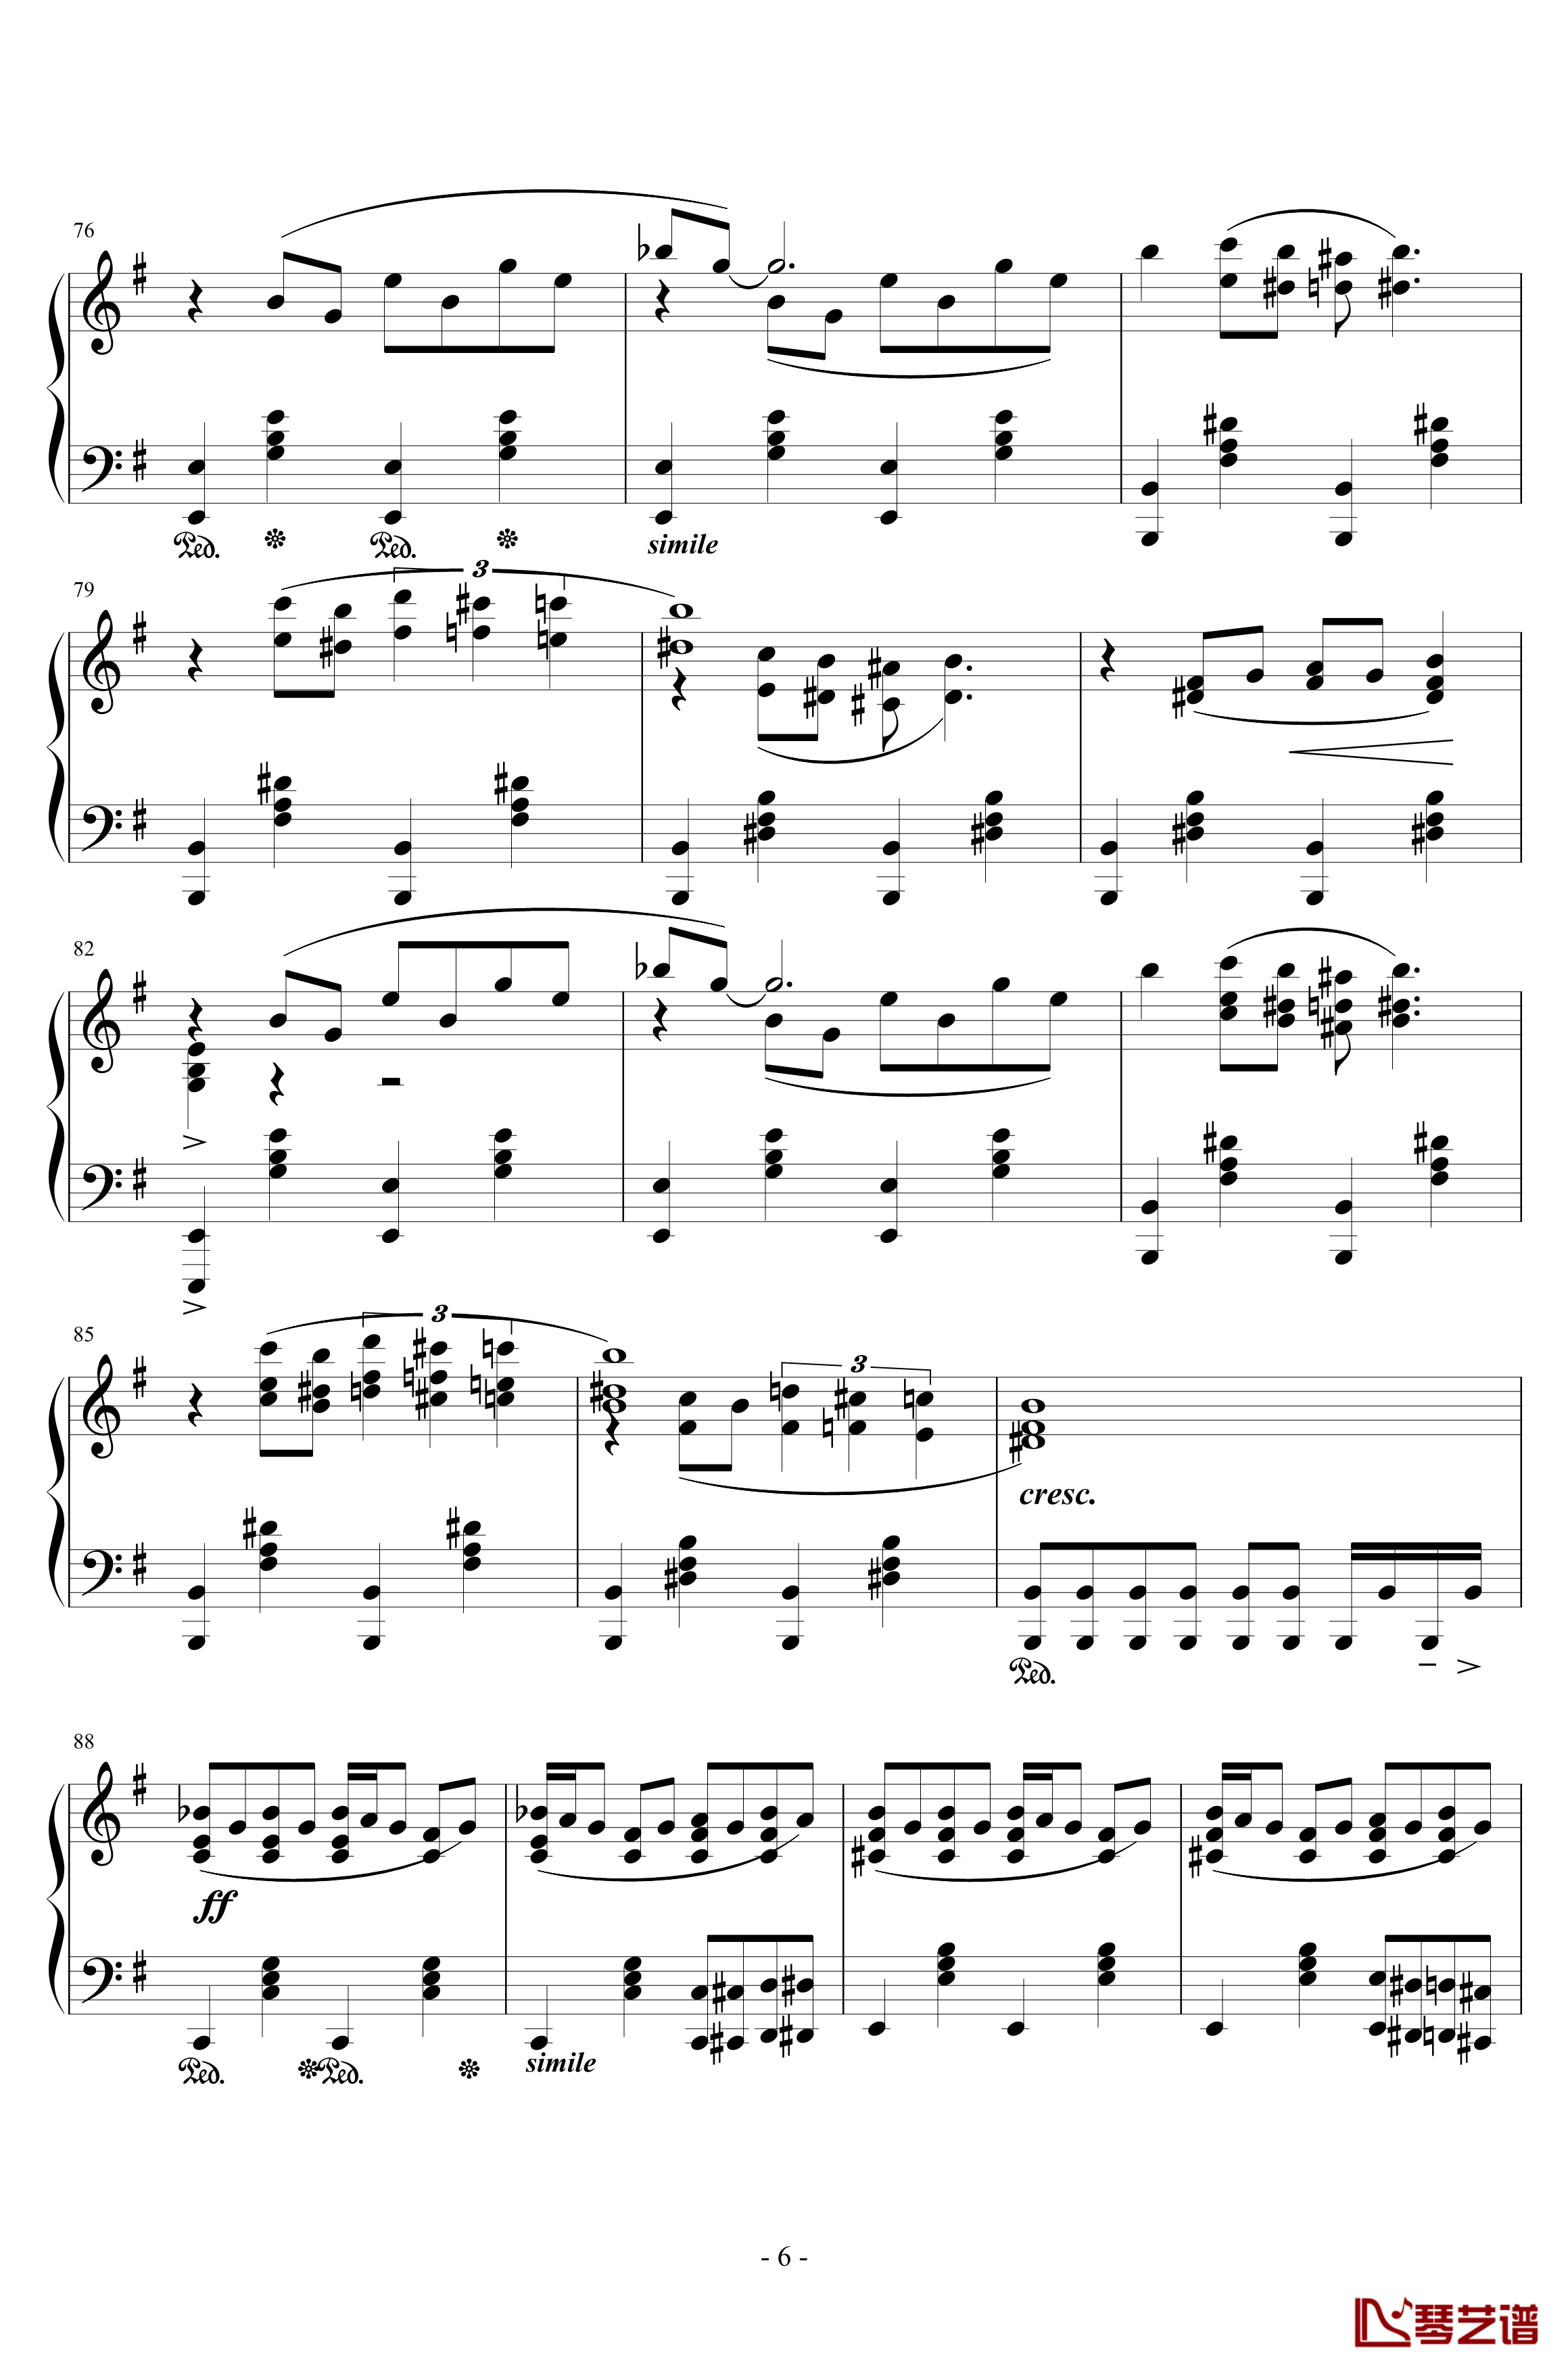 再临：单翼天使钢琴谱-植松伸夫6